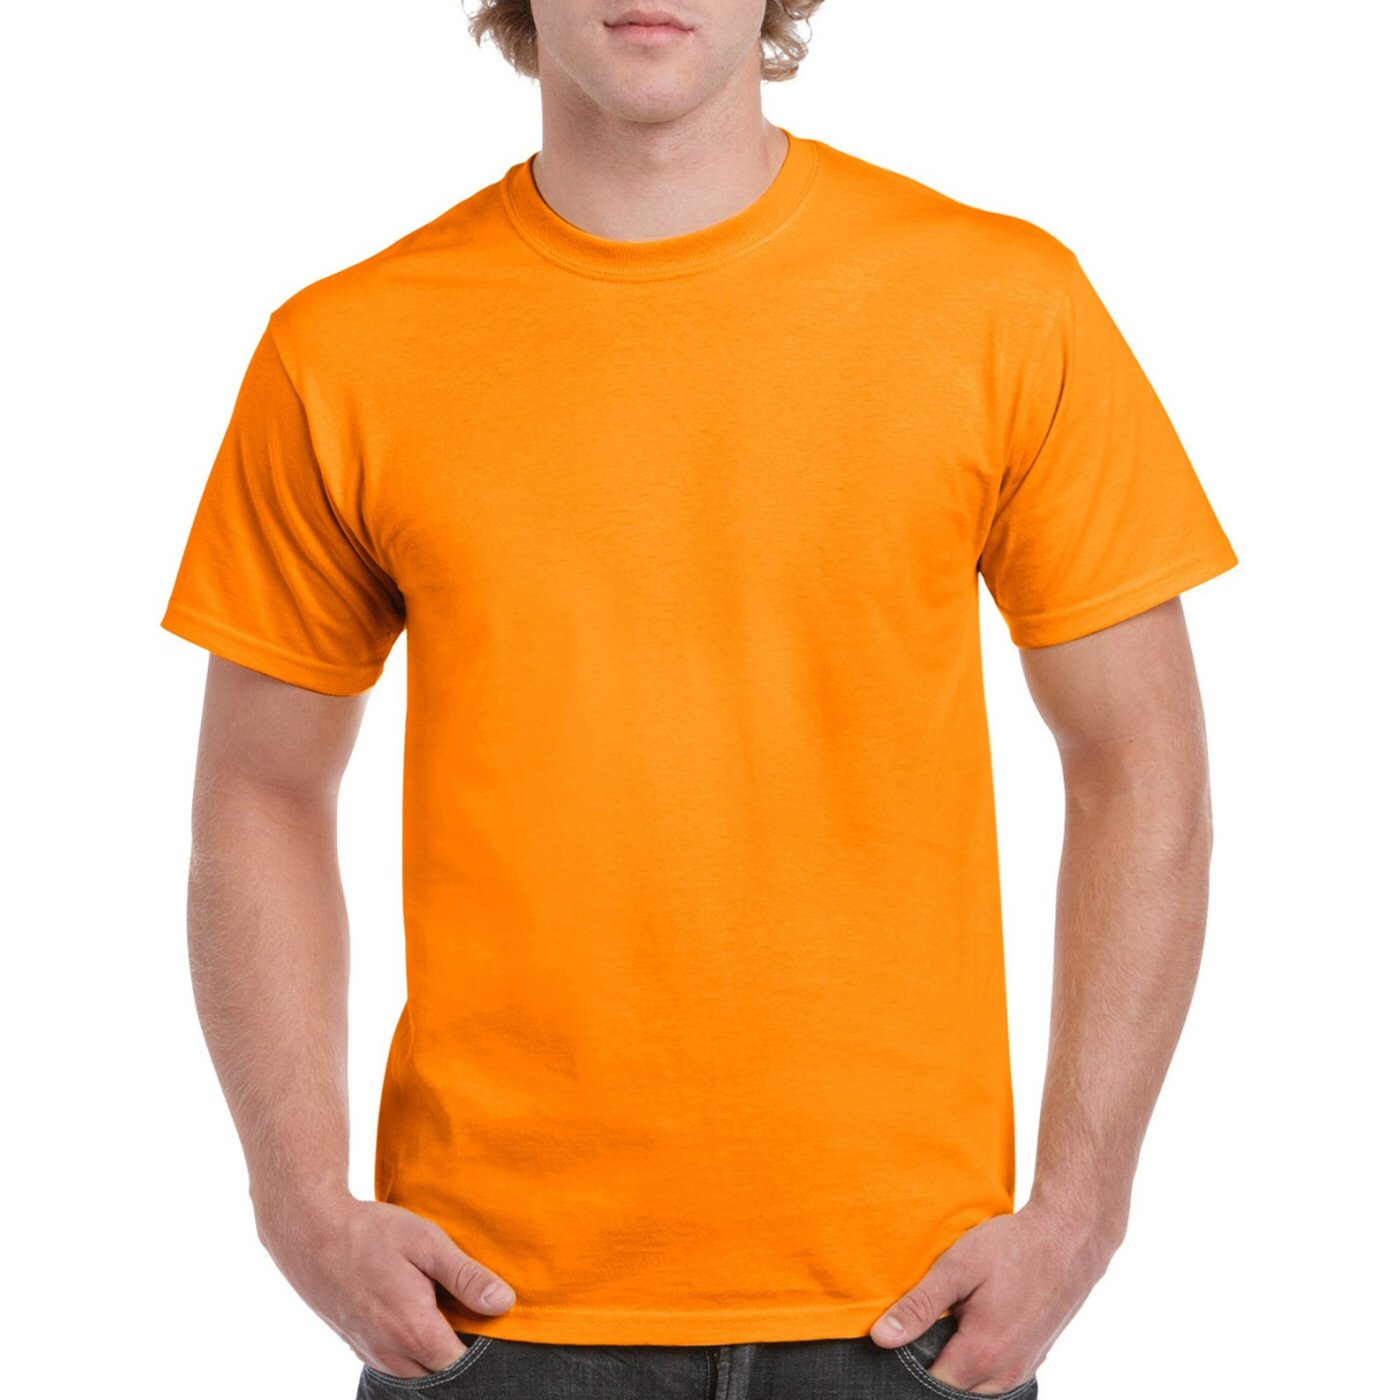 Beige Plain Round Neck T Shirt 1532234744 